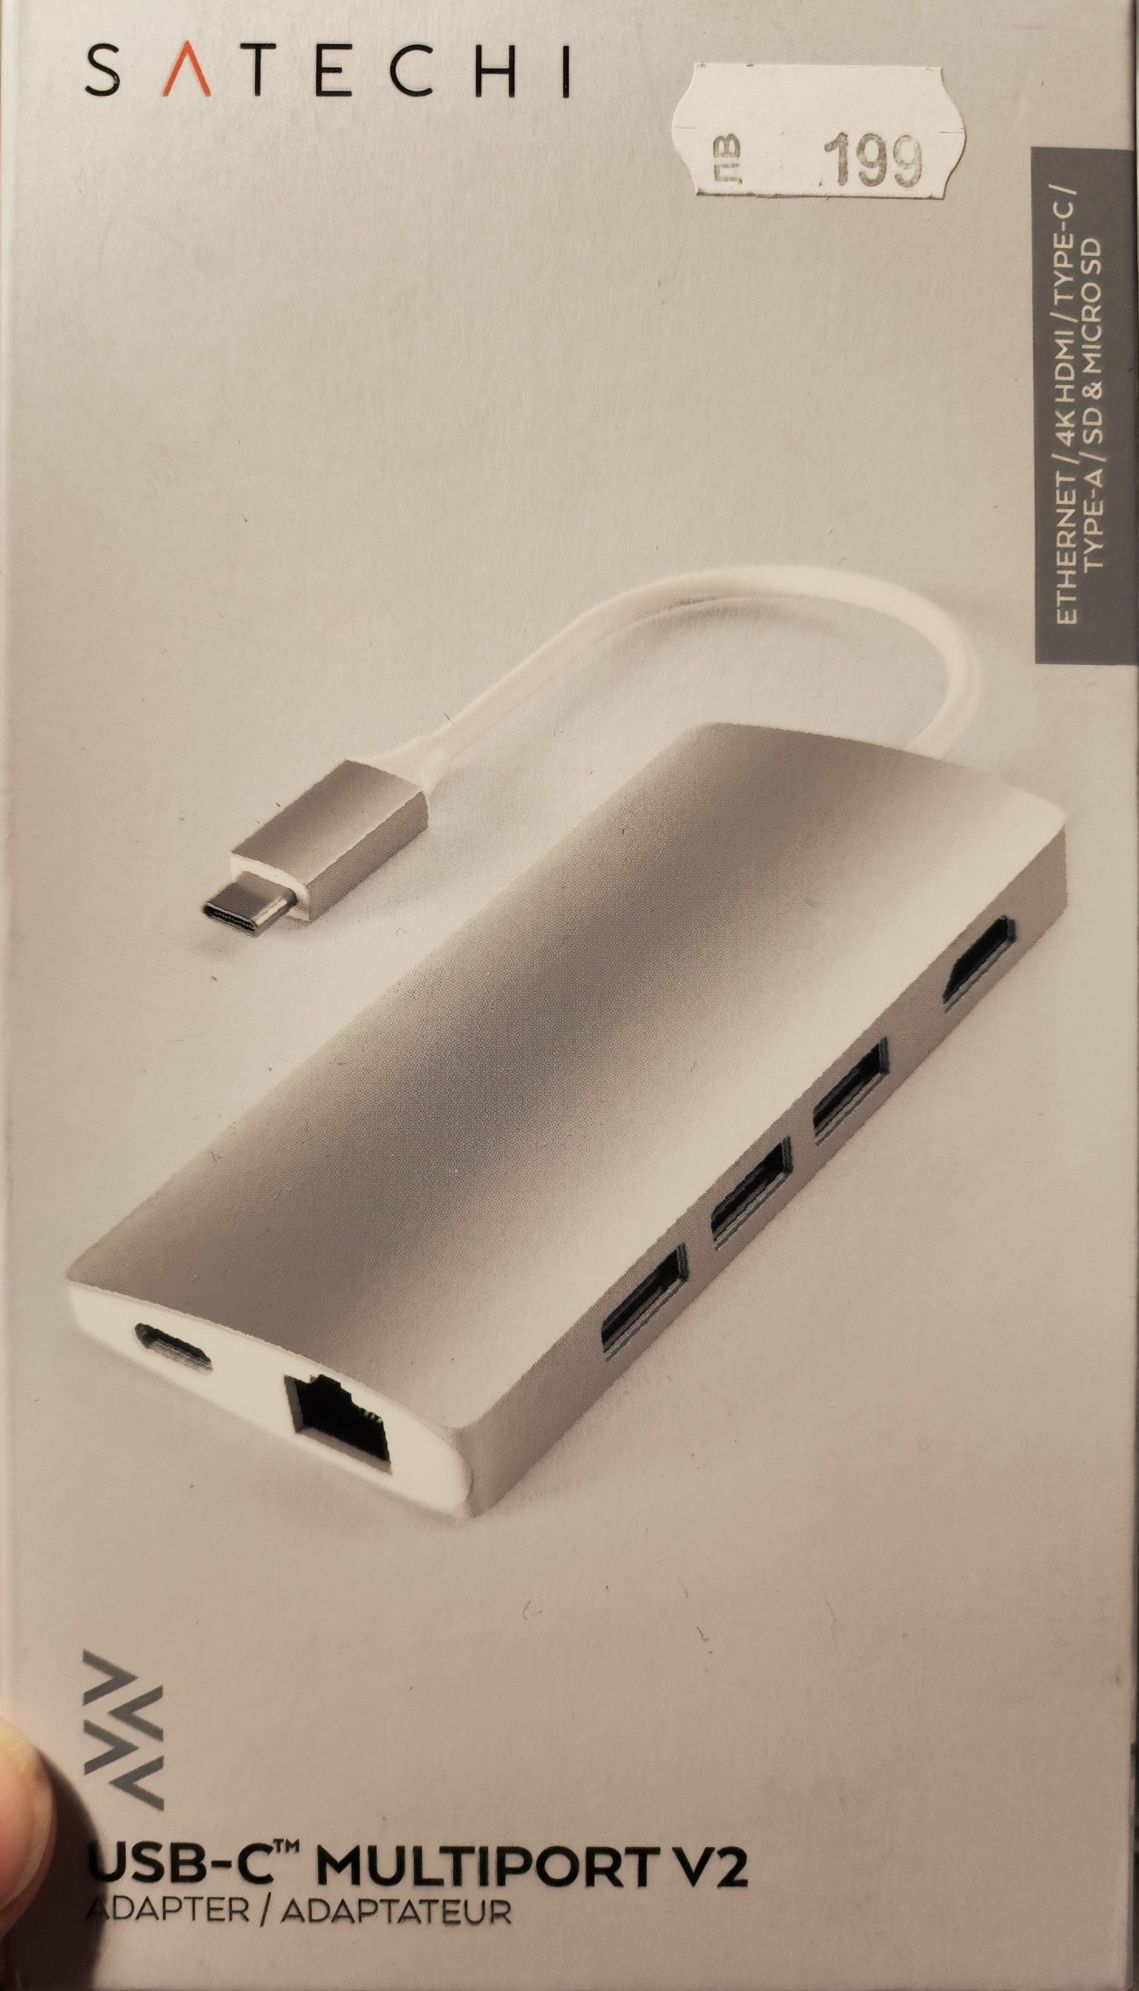 Mac USB - c thinderboult докинг станция